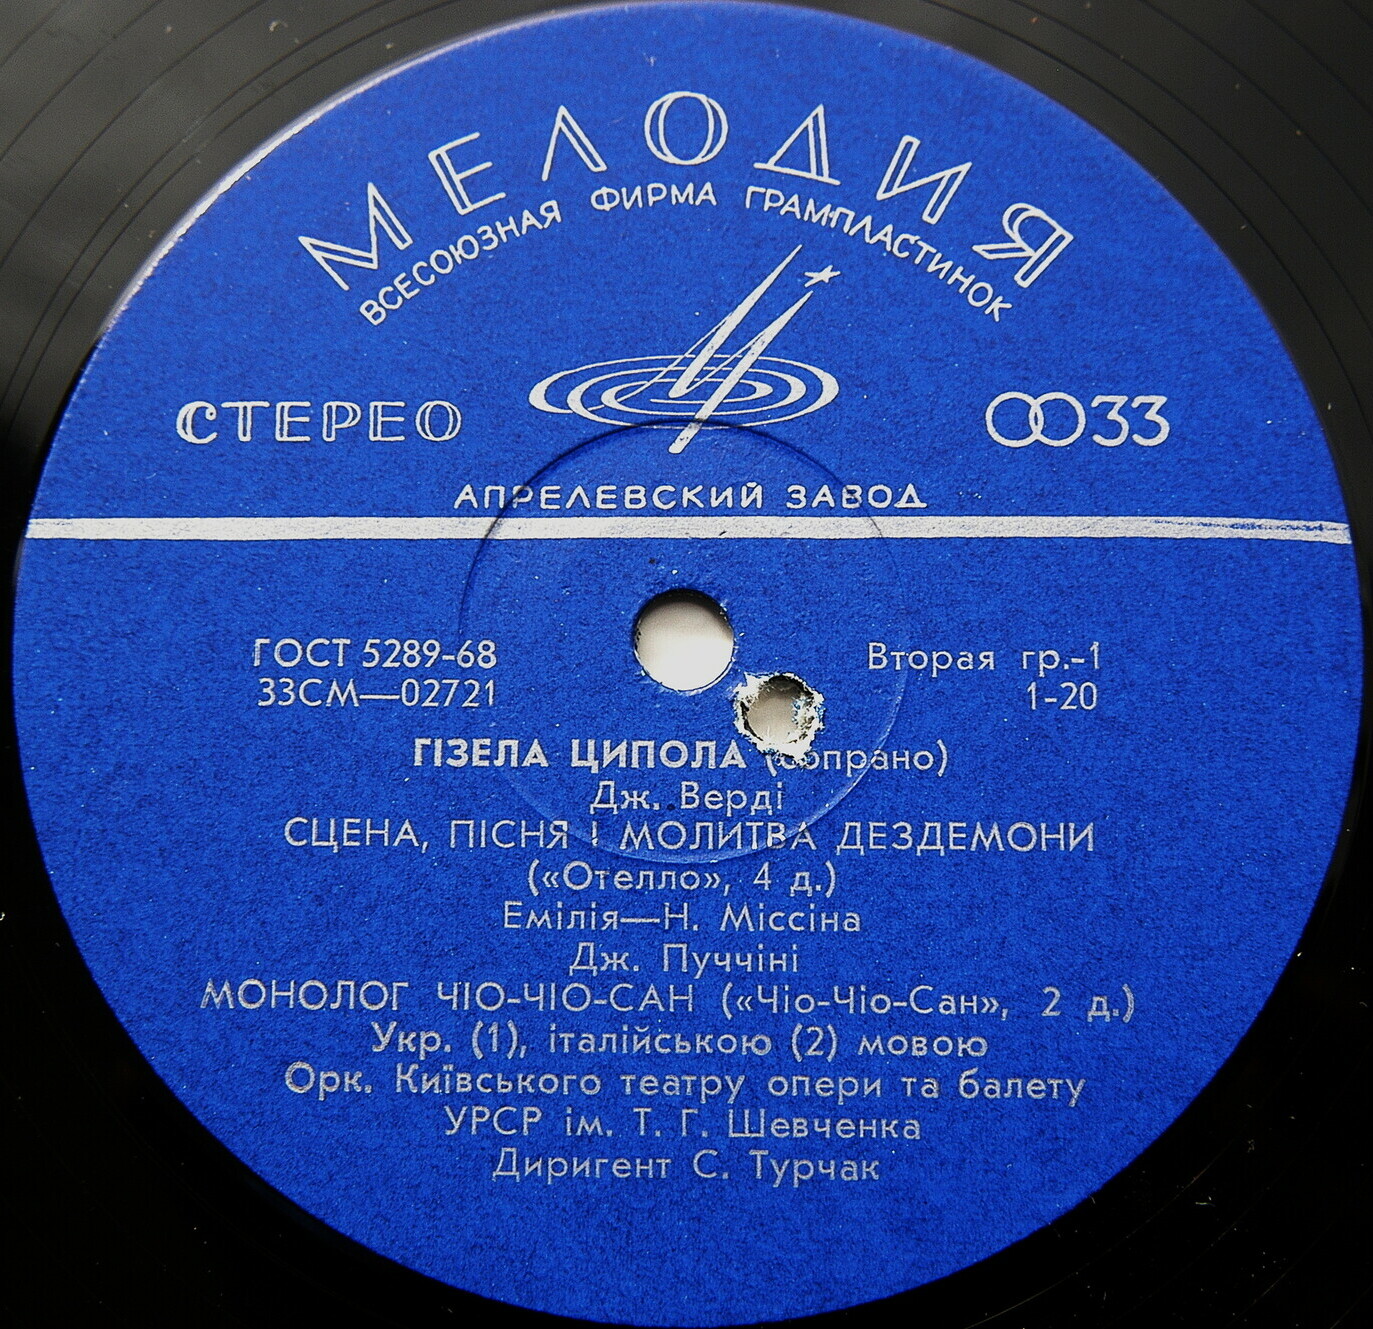 Гизела ЦИПОЛА, сопрано